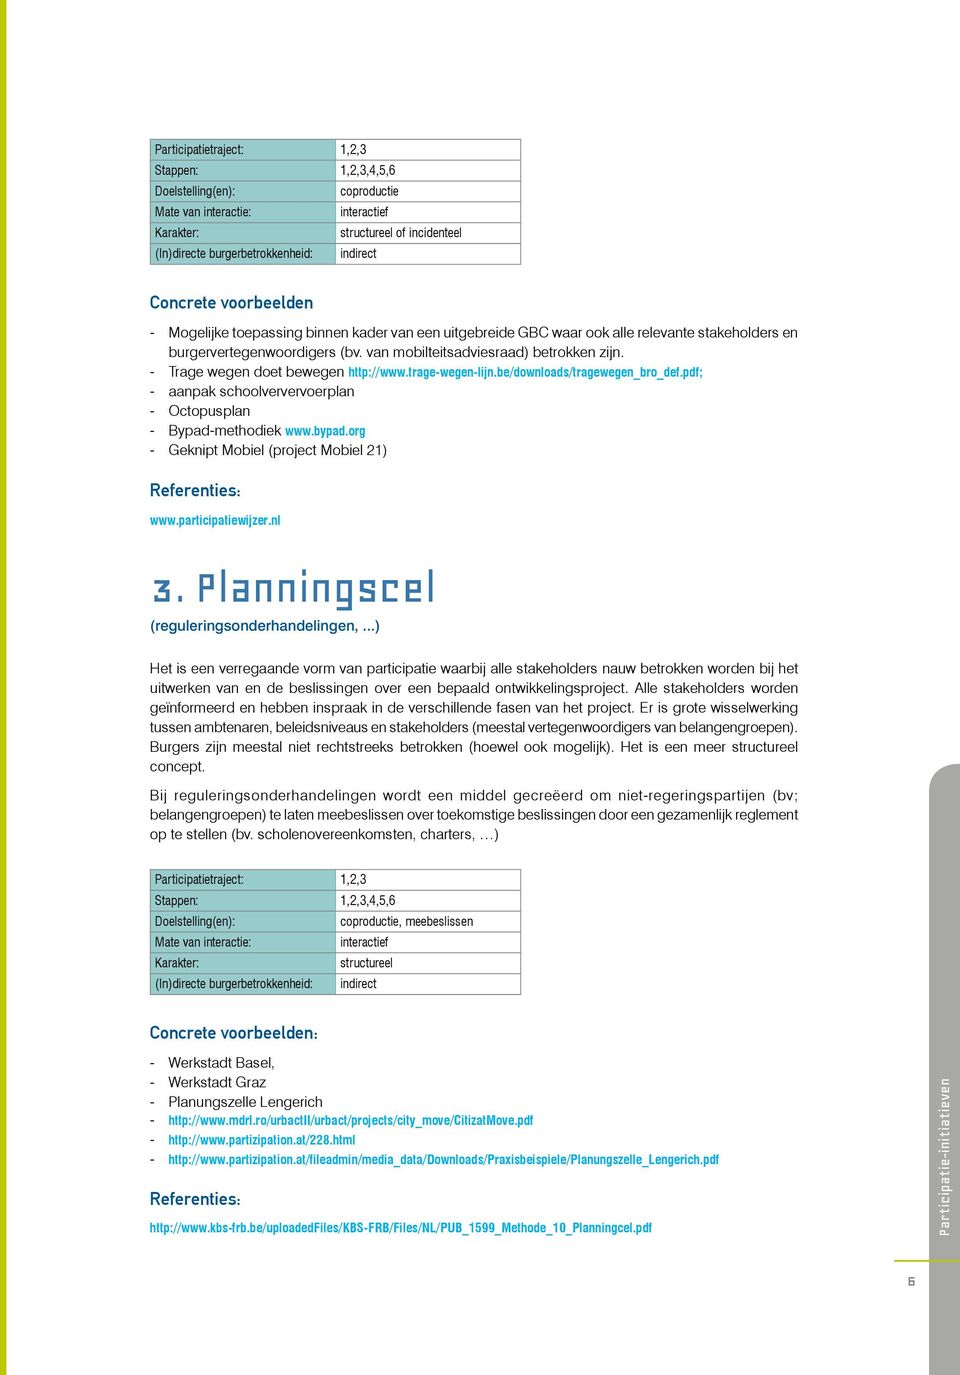 pdf; aanpak schoolververvoerplan Octopusplan Bypad-methodiek www.bypad.org Geknipt Mobiel (project Mobiel 21) www.participatiewijzer.nl 3. Planningscel (reguleringsonderhandelingen,.